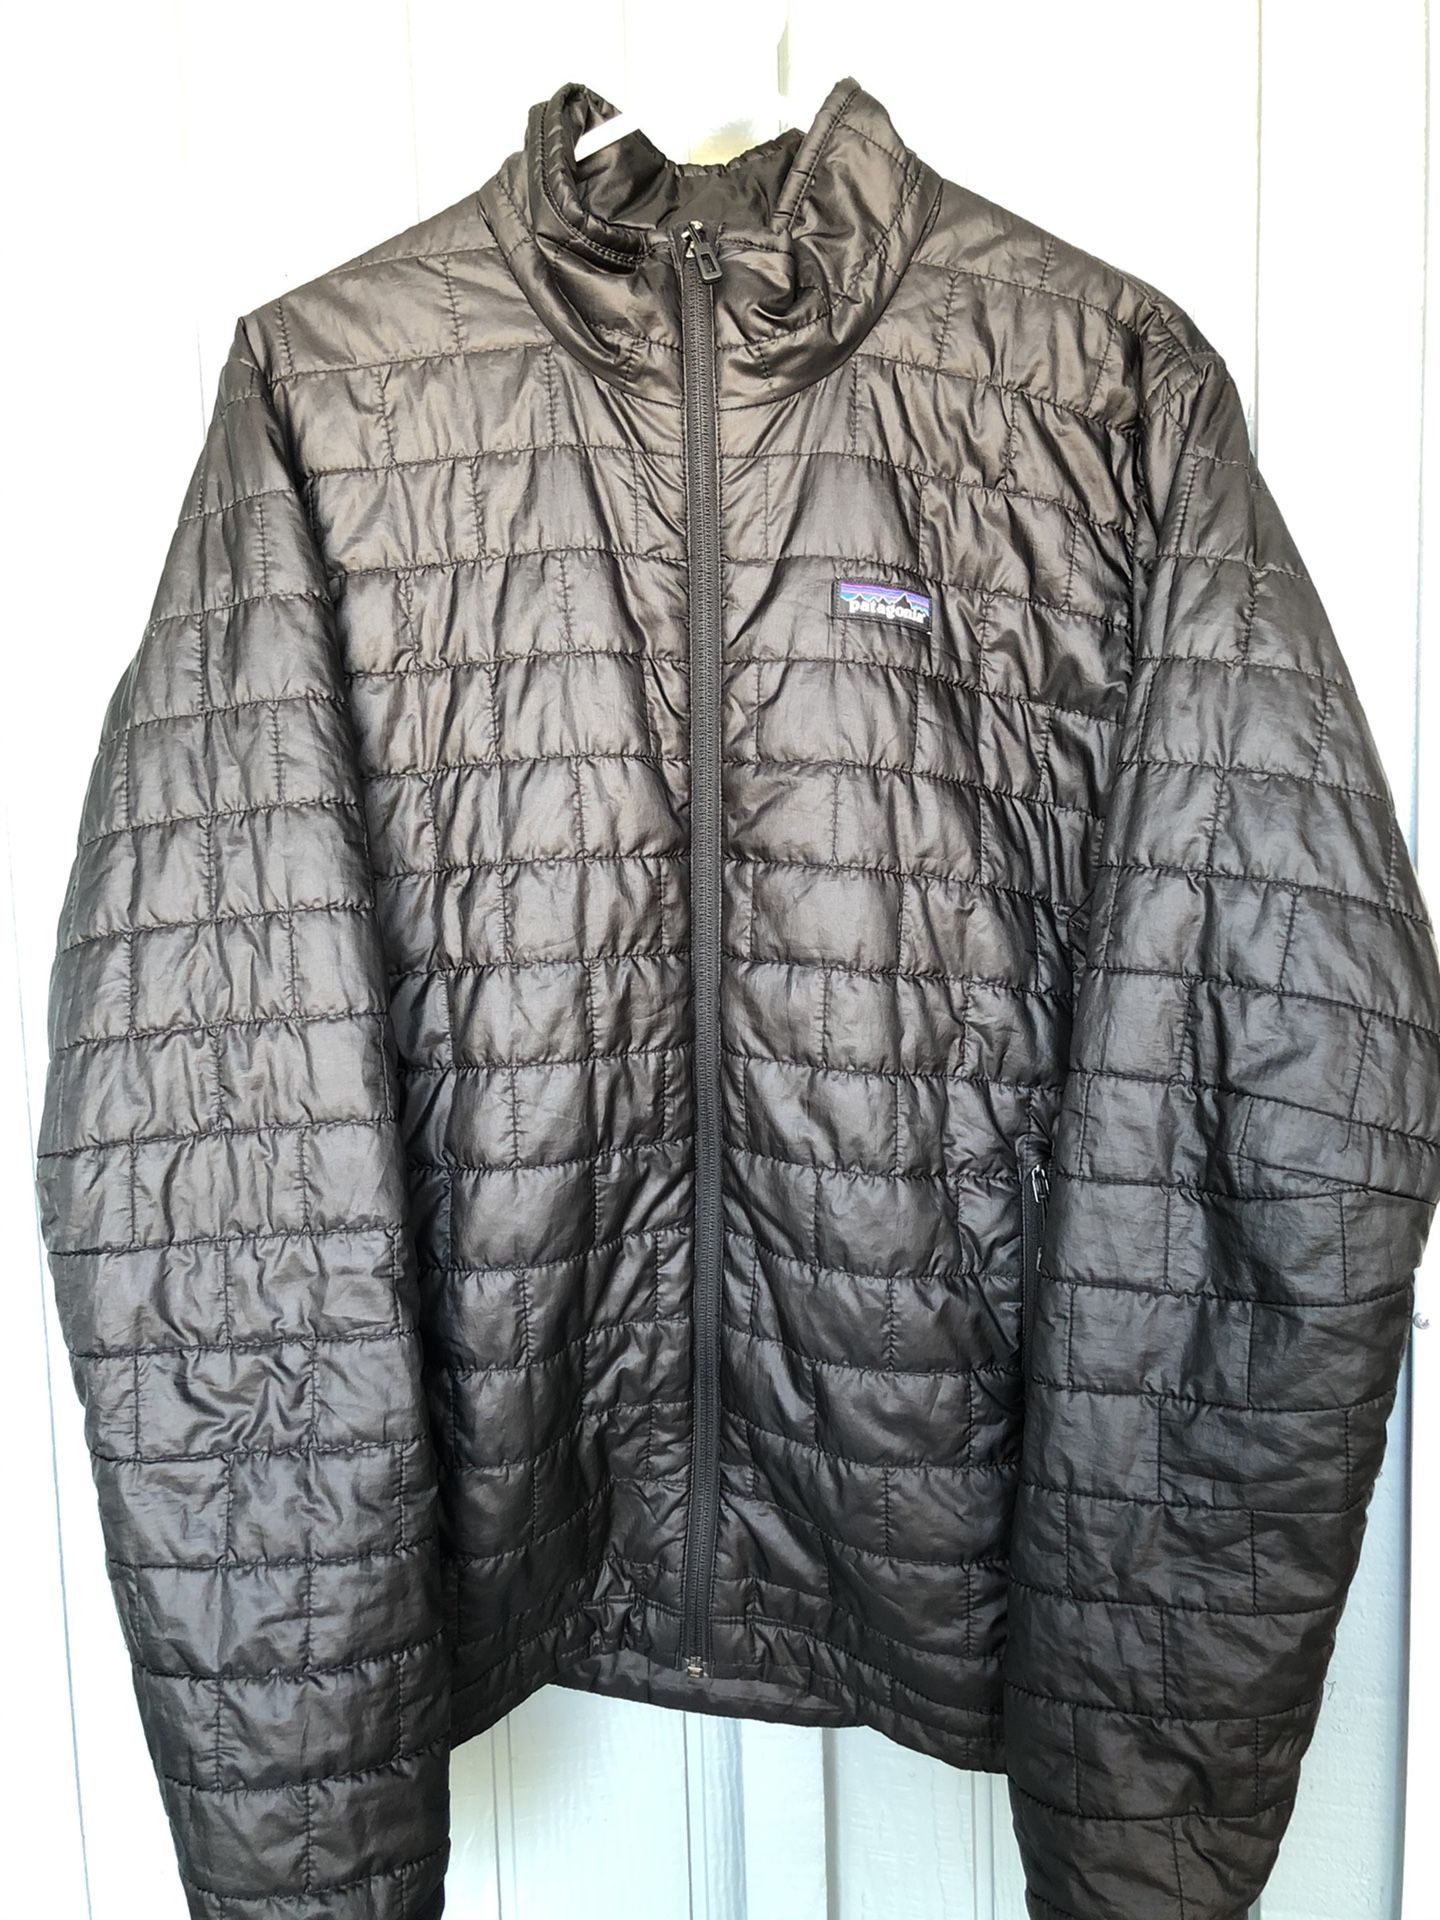 Patagonia Men Jacket Size Medium $130.00